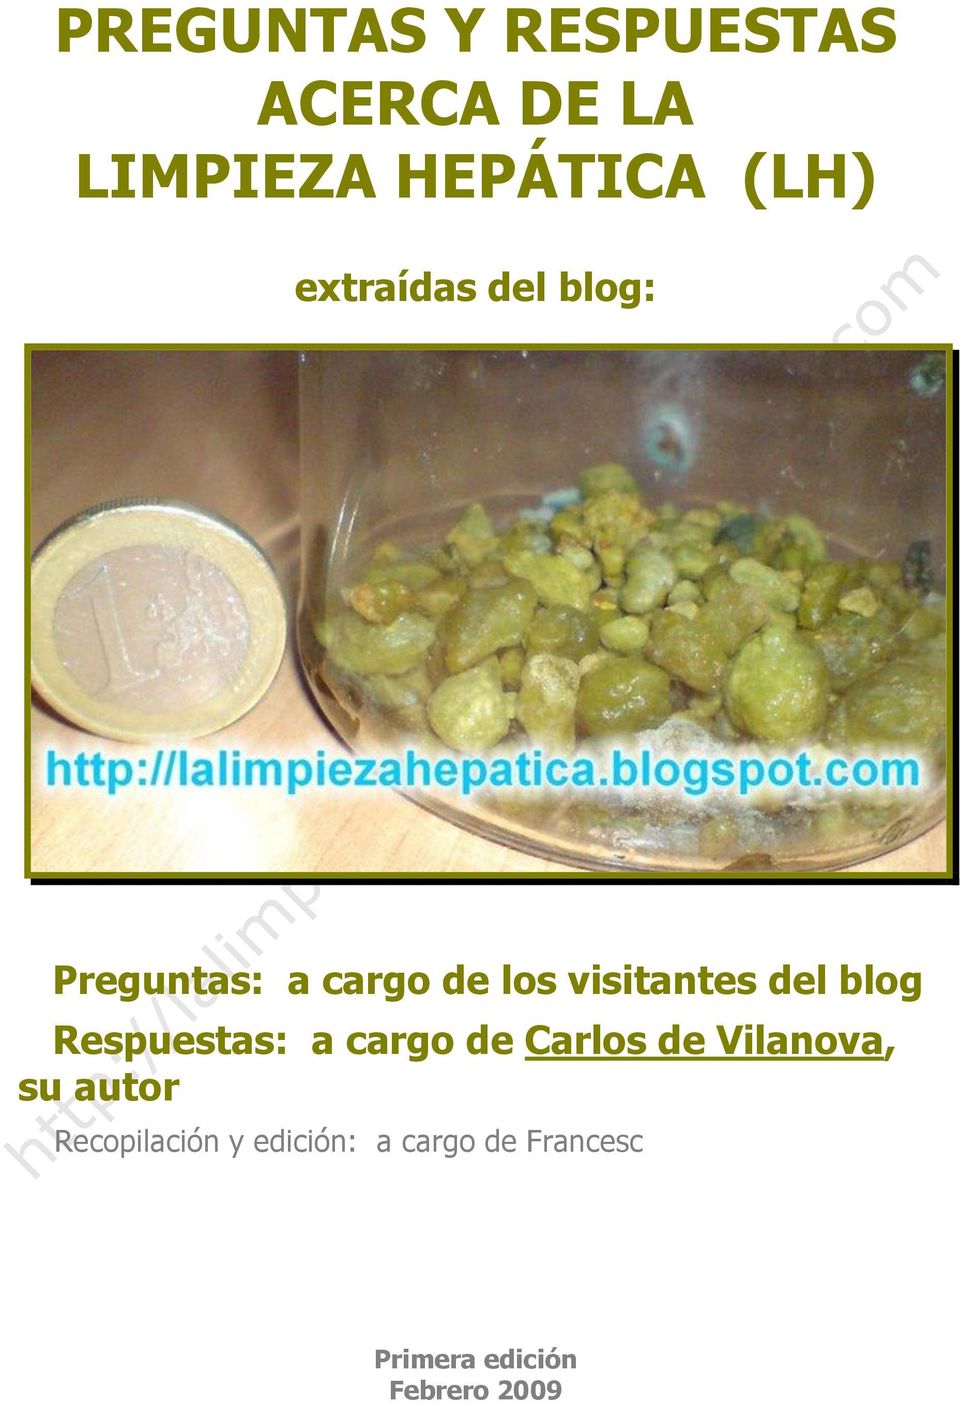 blog Respuestas: a cargo de Carlos de Vilanova, su autor